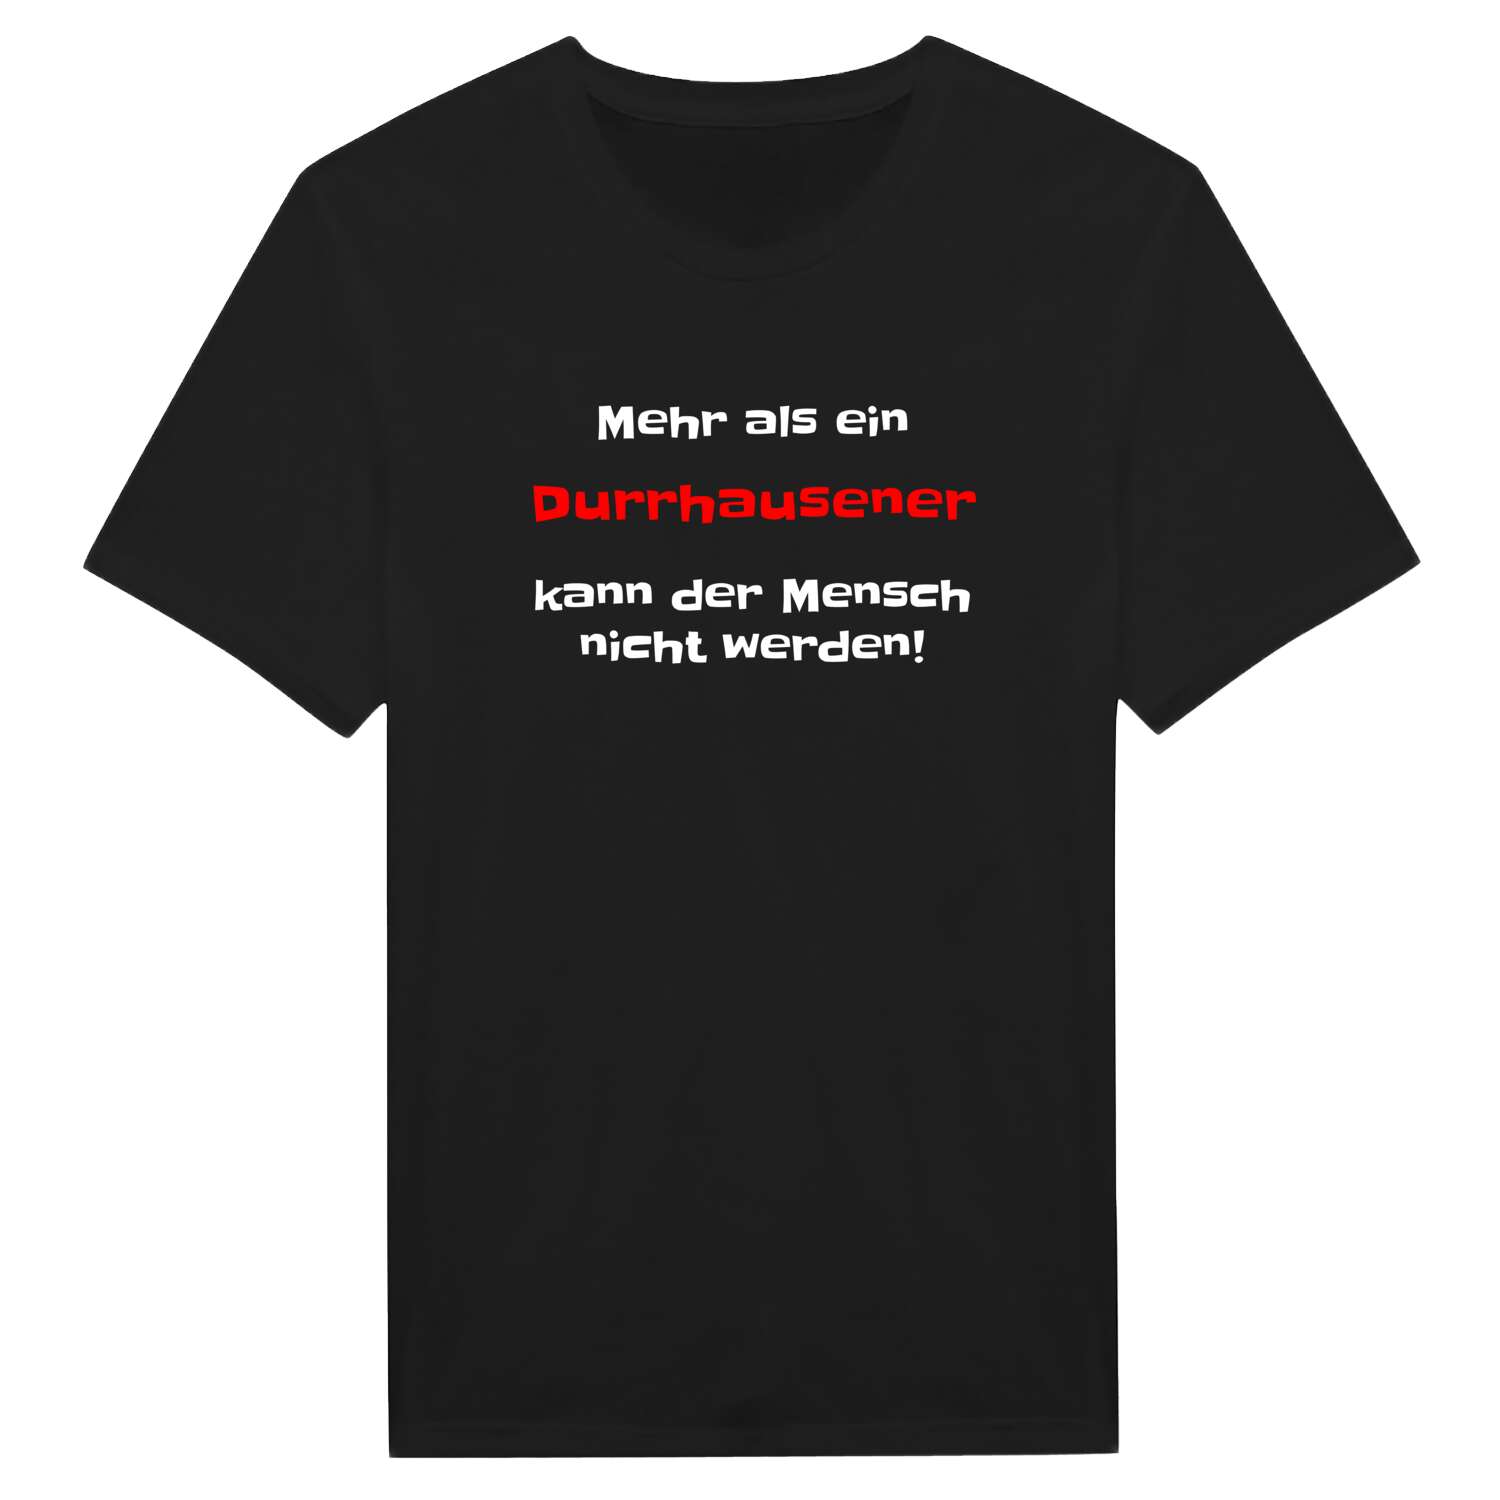 Durrhausen T-Shirt »Mehr als ein«